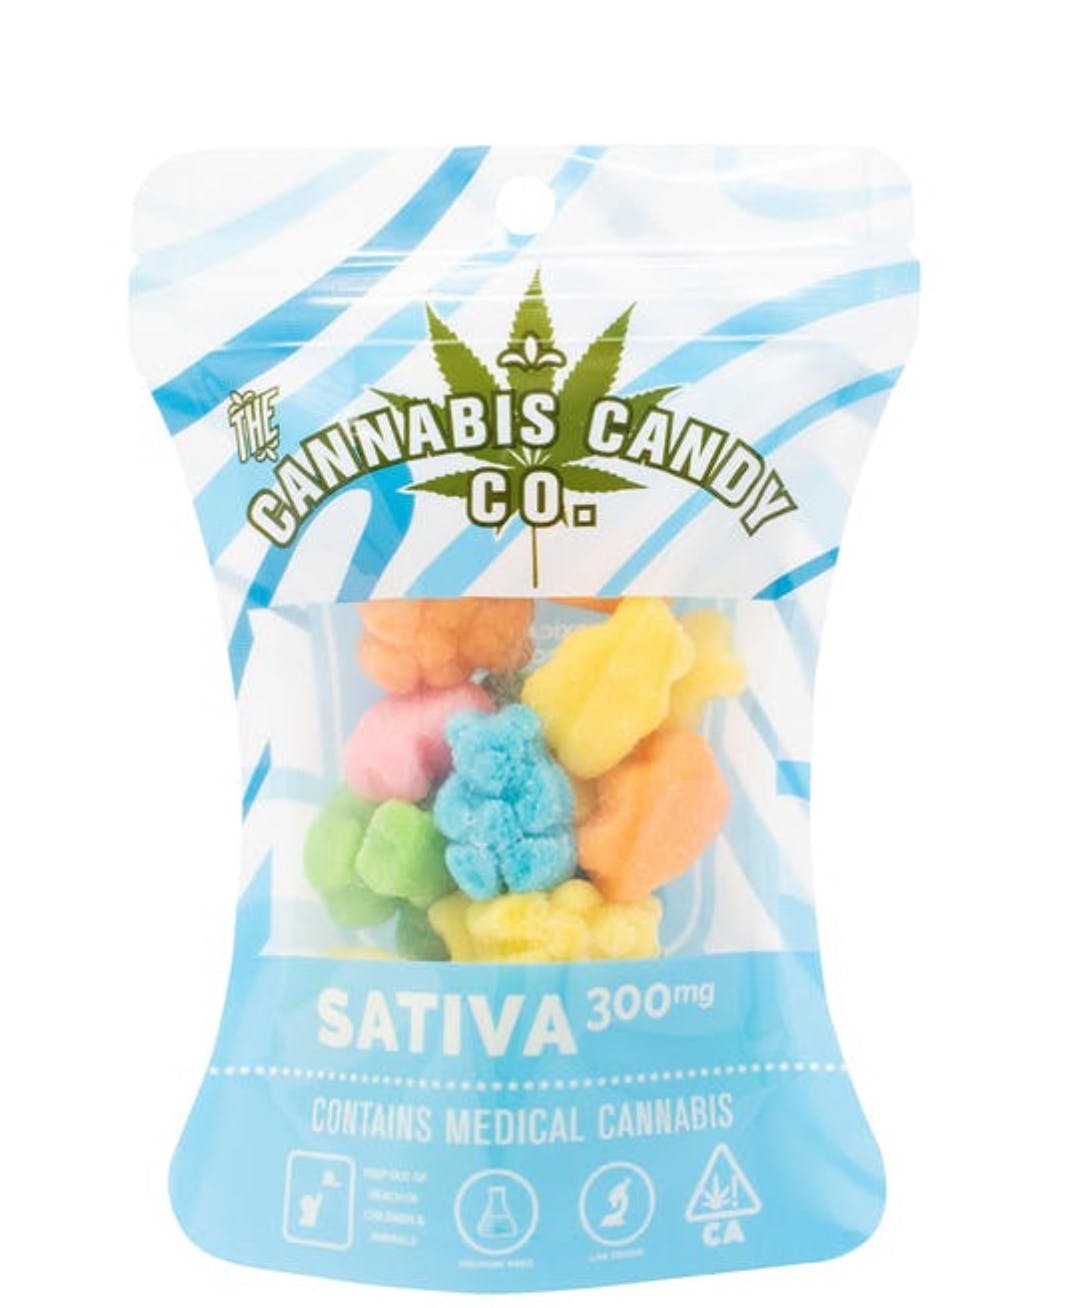 edible-the-cannabis-candy-co-sativa